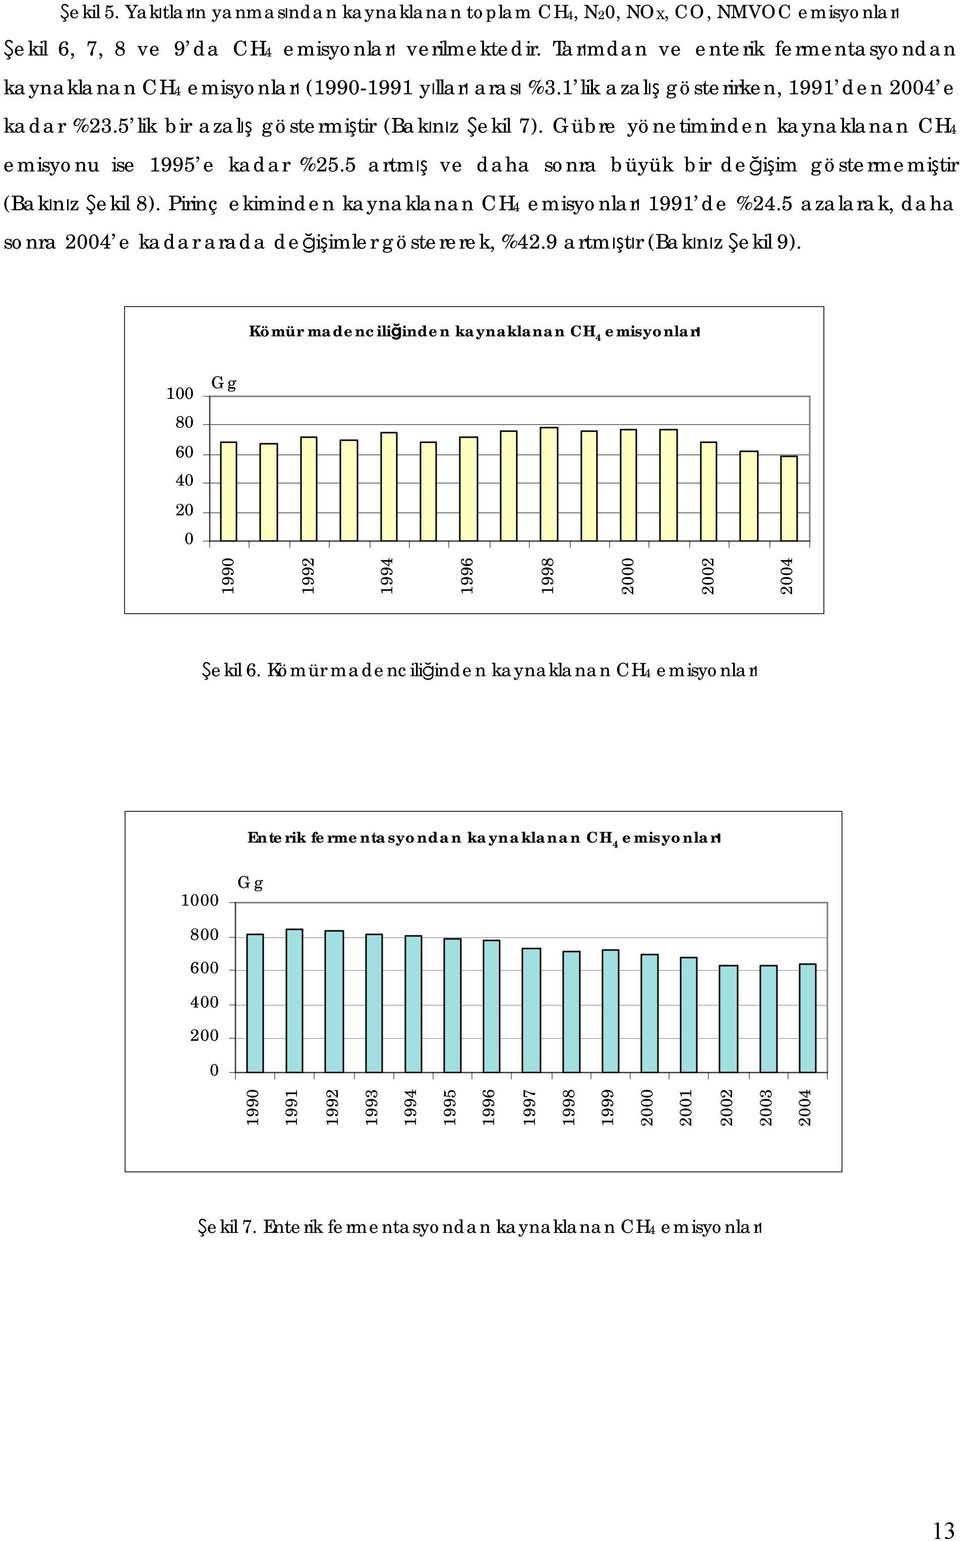 Gübre yönetiminden kaynaklanan CH4 emisyonu ise e kadar %25.5 artmış ve daha sonra büyük bir değişim göstermemiştir (Bakınız Şekil 8). Pirinç ekiminden kaynaklanan CH4 emisyonları de %24.